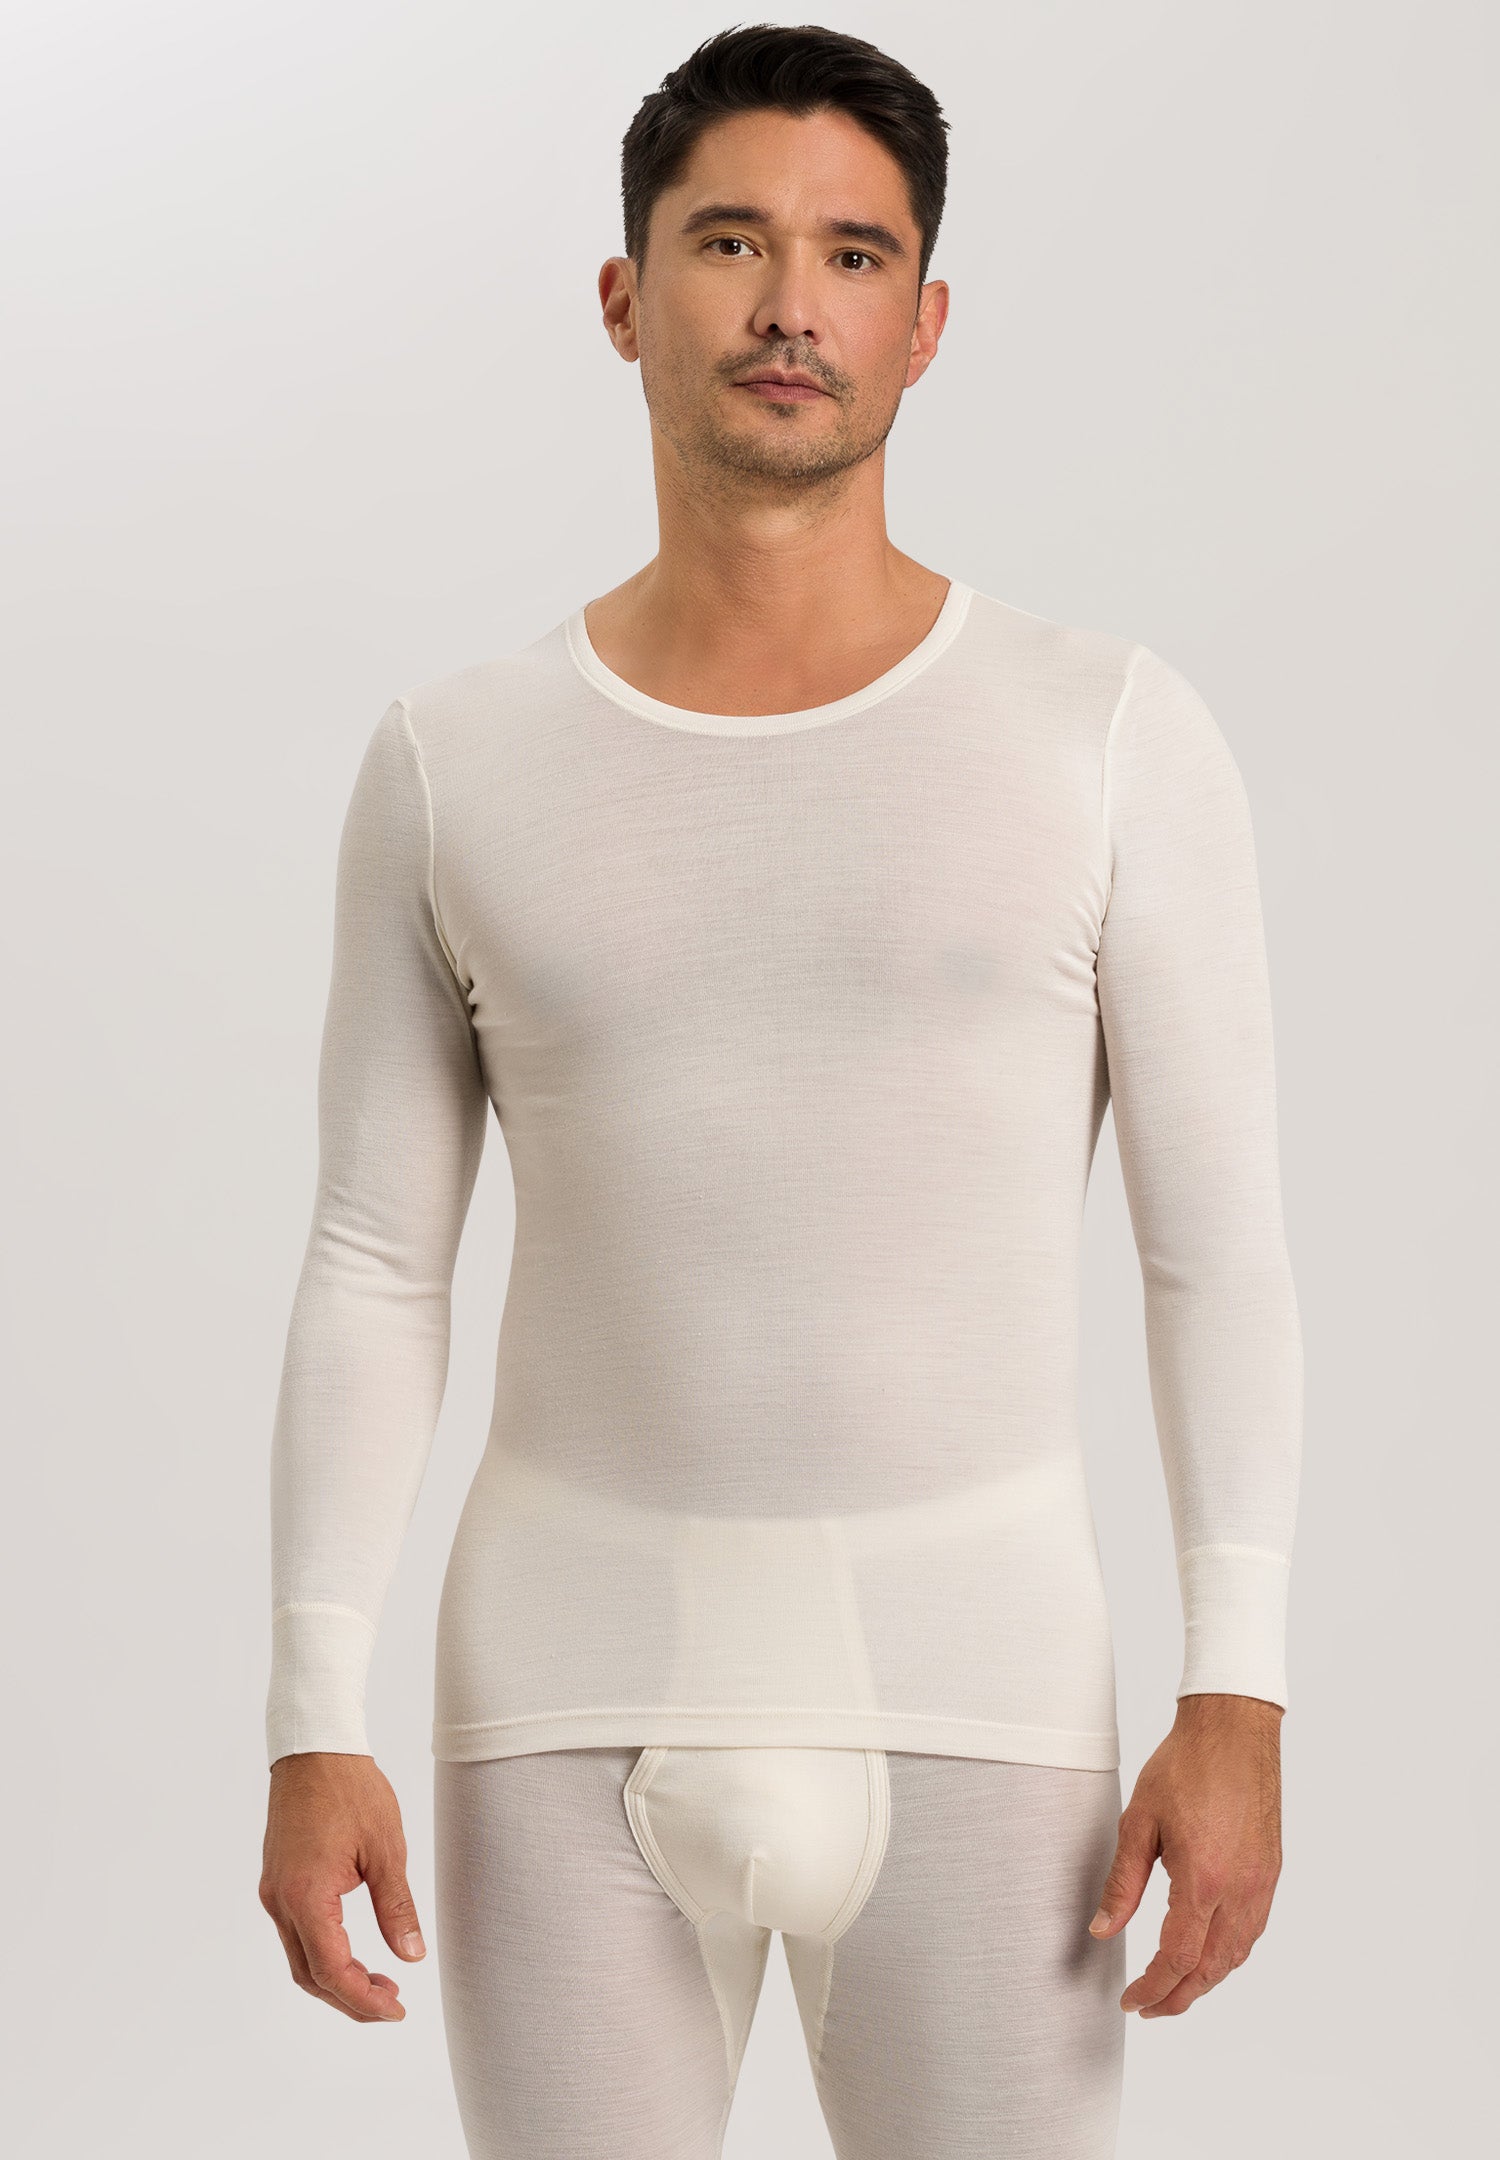 73402 Woolen Silk M Long Sleeve Shirt - 795 Cygne